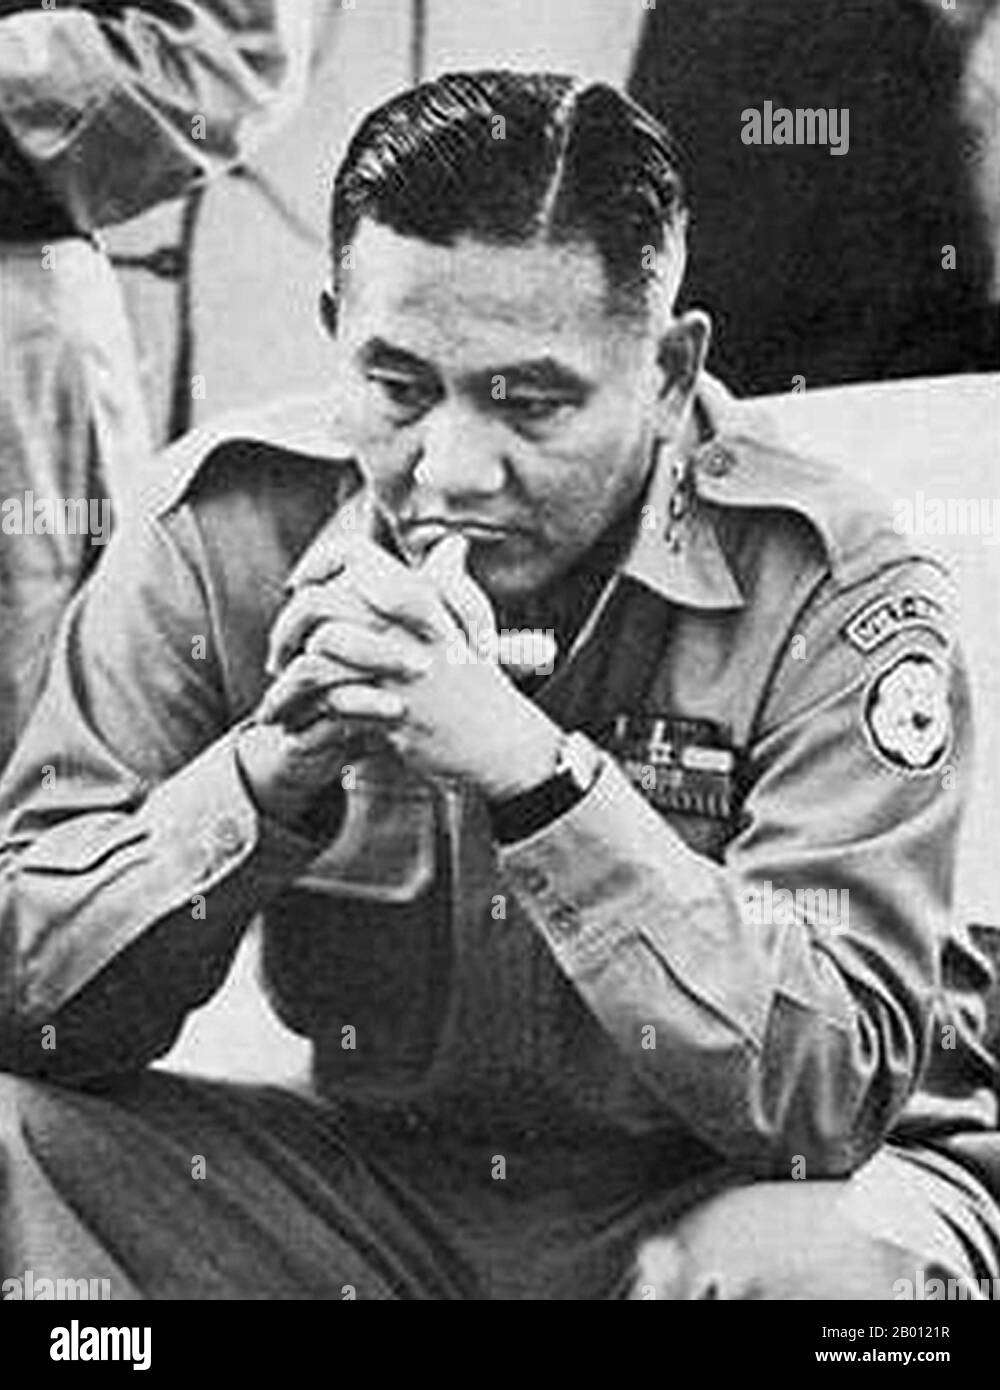 Vietnam: General Duong Van Minh (1916 – 2001), alias 'Big Minh', Präsident der Republik Vietnam in den Jahren 1963 und 1975. Duong Van Minh (16. Februar 1916 – 6. August 2001), im Volksmund „Big Minh“ genannt, war ein südvietnamesischer General und Politiker. Er war ein hochrangiger General der Armee der Republik Vietnam (ARVN) während der Herrschaft der NGO Dinh Diem. 1963 wurde er Präsident, nachdem er einen Staatsstreich führte, bei dem Diem ermordet wurde. Minh dauerte nur drei Monate, bevor er von Nguyen Khanh gestürzt wurde, aber er führte diese Nation erneut im April 1975, während der letzten zwei Tage ihres Bestehens. Stockfoto